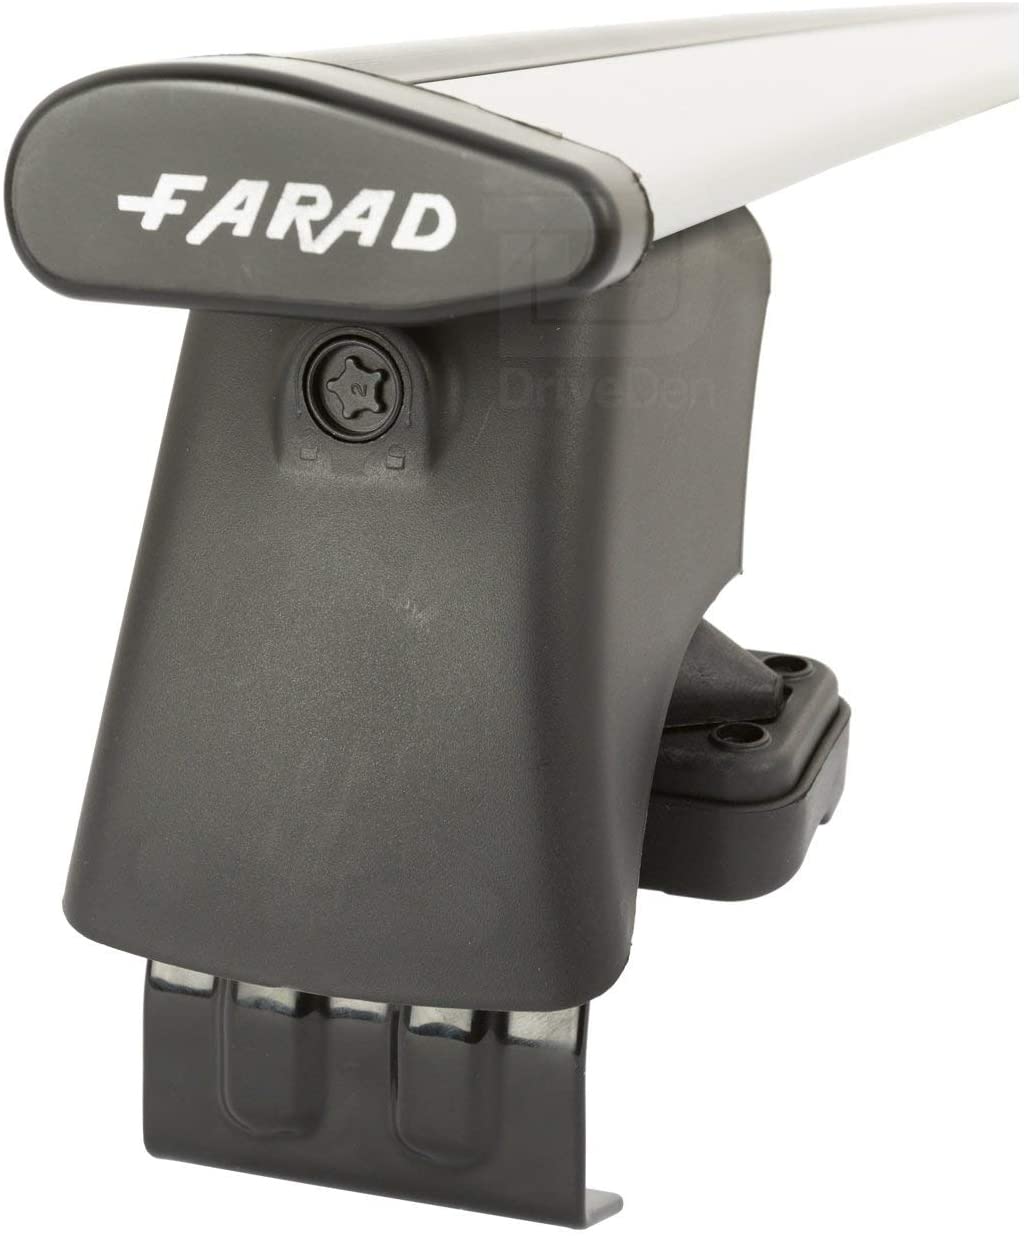 FARAD-Kit H2 per barre portatutto - Seat Exeo 2009-2013 (senza corrimano)